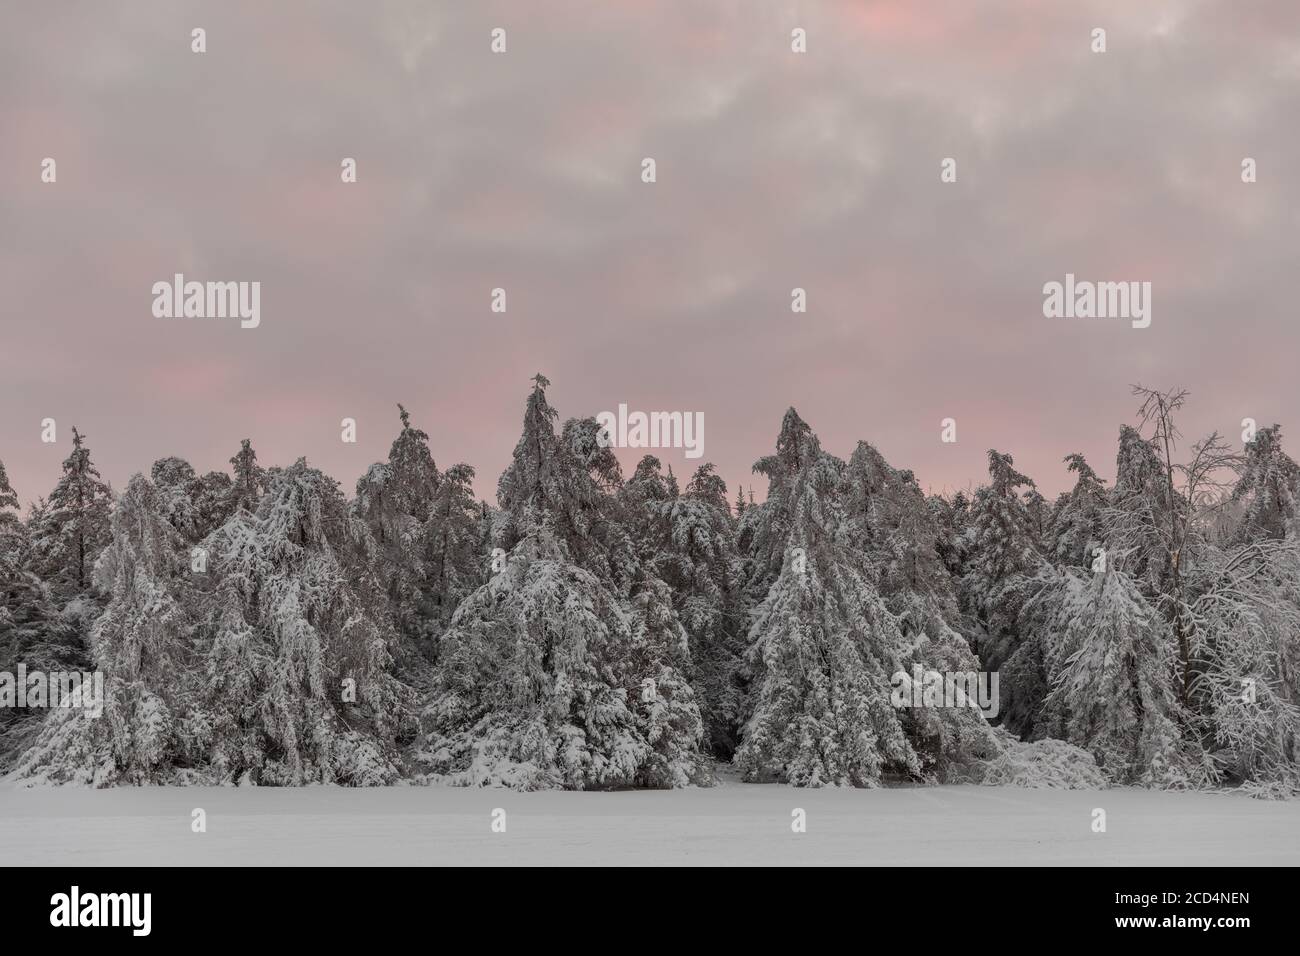 Mohawk Valley, Estado de Nueva York: Evergreens cubiertos de nieve después de una tormenta, Condado de Herkimer. Foto de stock